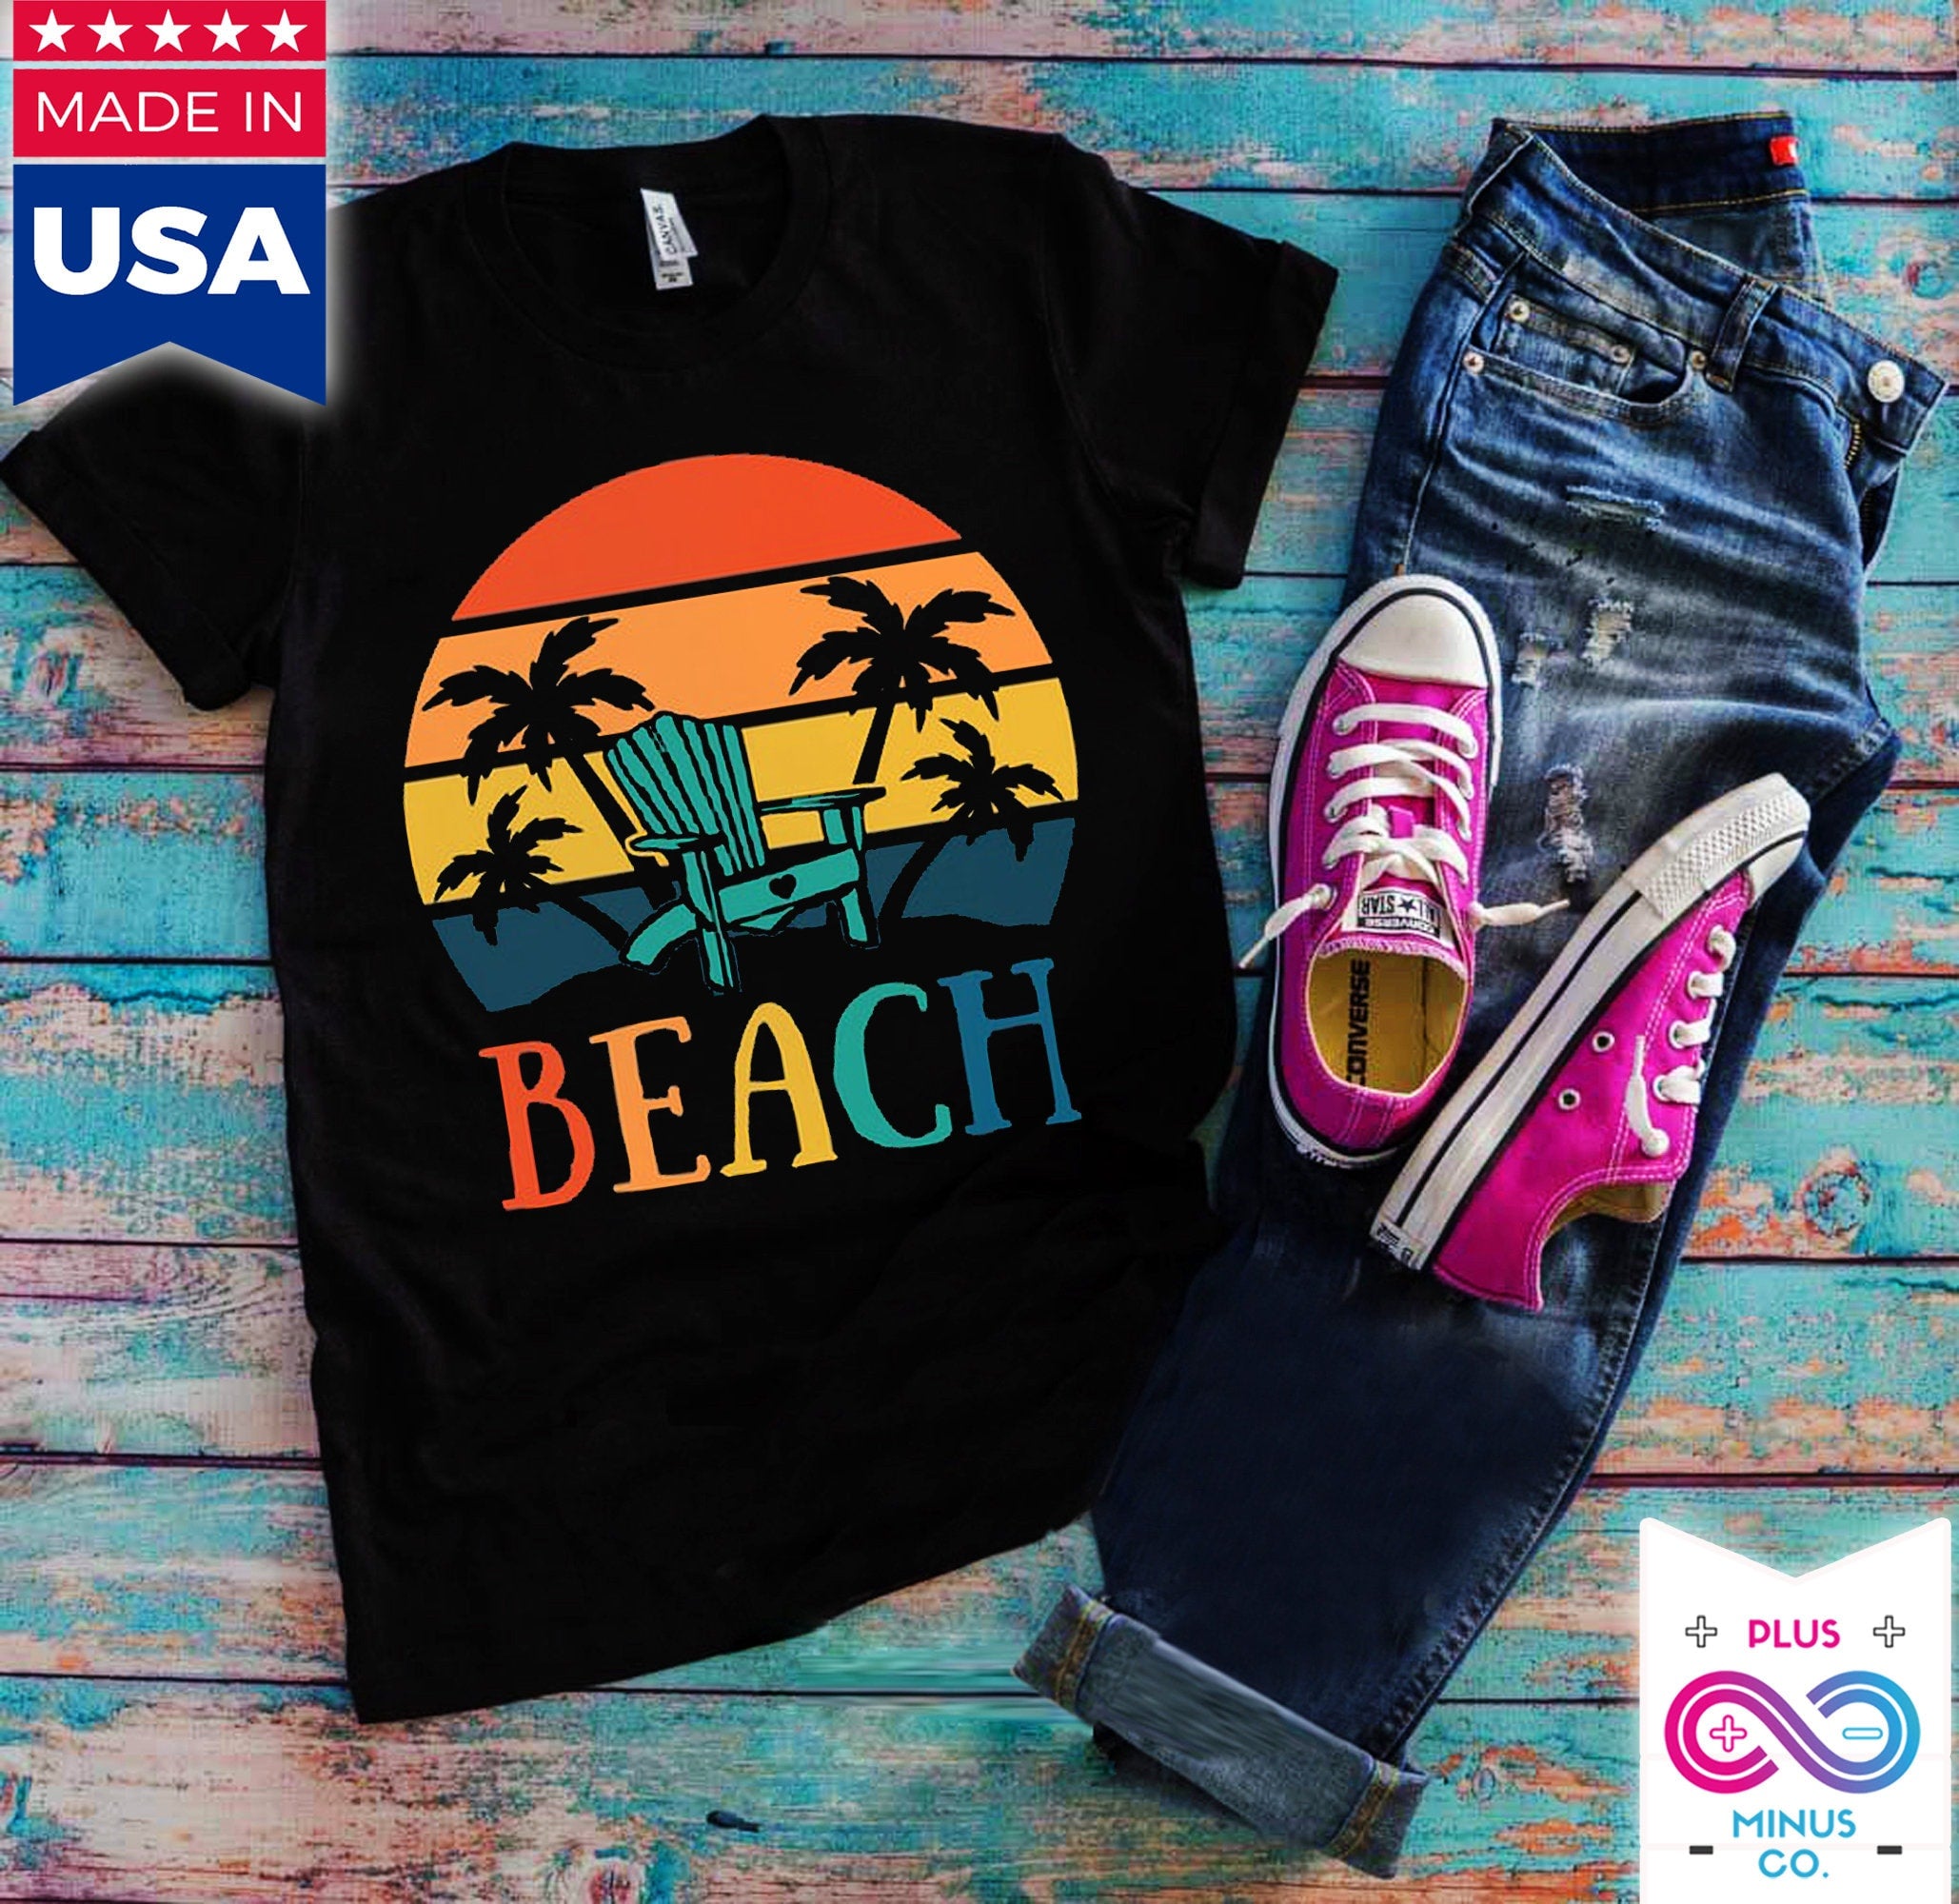 समुद्र तट कुर्सी ताड़ के पेड़ | रेट्रो सनसेट टी-शर्ट, आइलैंड लाइफ टी-शर्ट | ग्रीष्मकालीन शर्ट | वेकेशन शर्ट - प्लसमिनस्को.कॉम